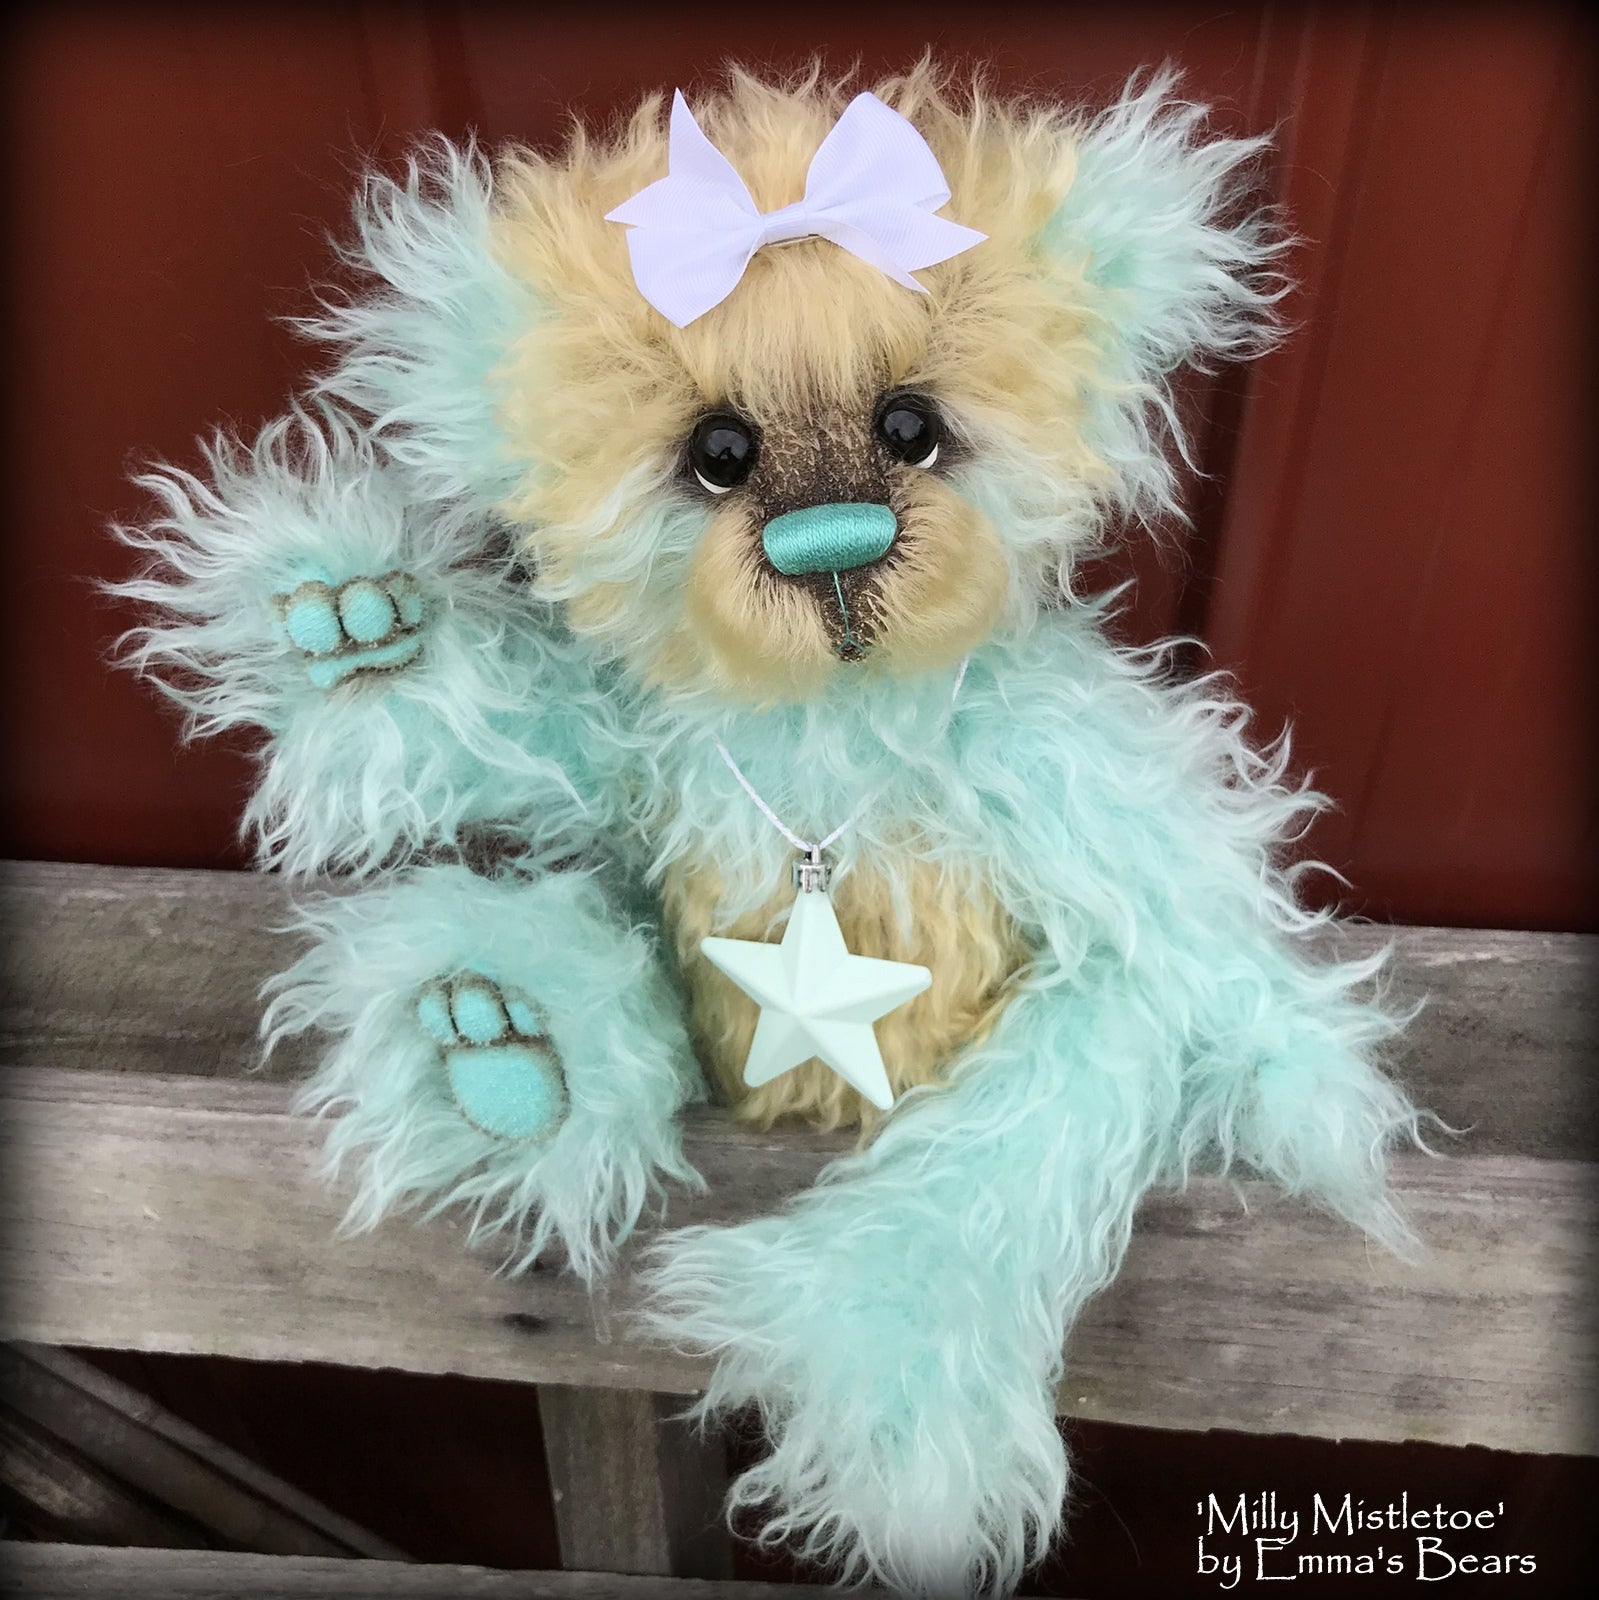 Milly Mistletoe - 16" MOHAIR Artist baby style Panda Bear by Emma's Bears - OOAK